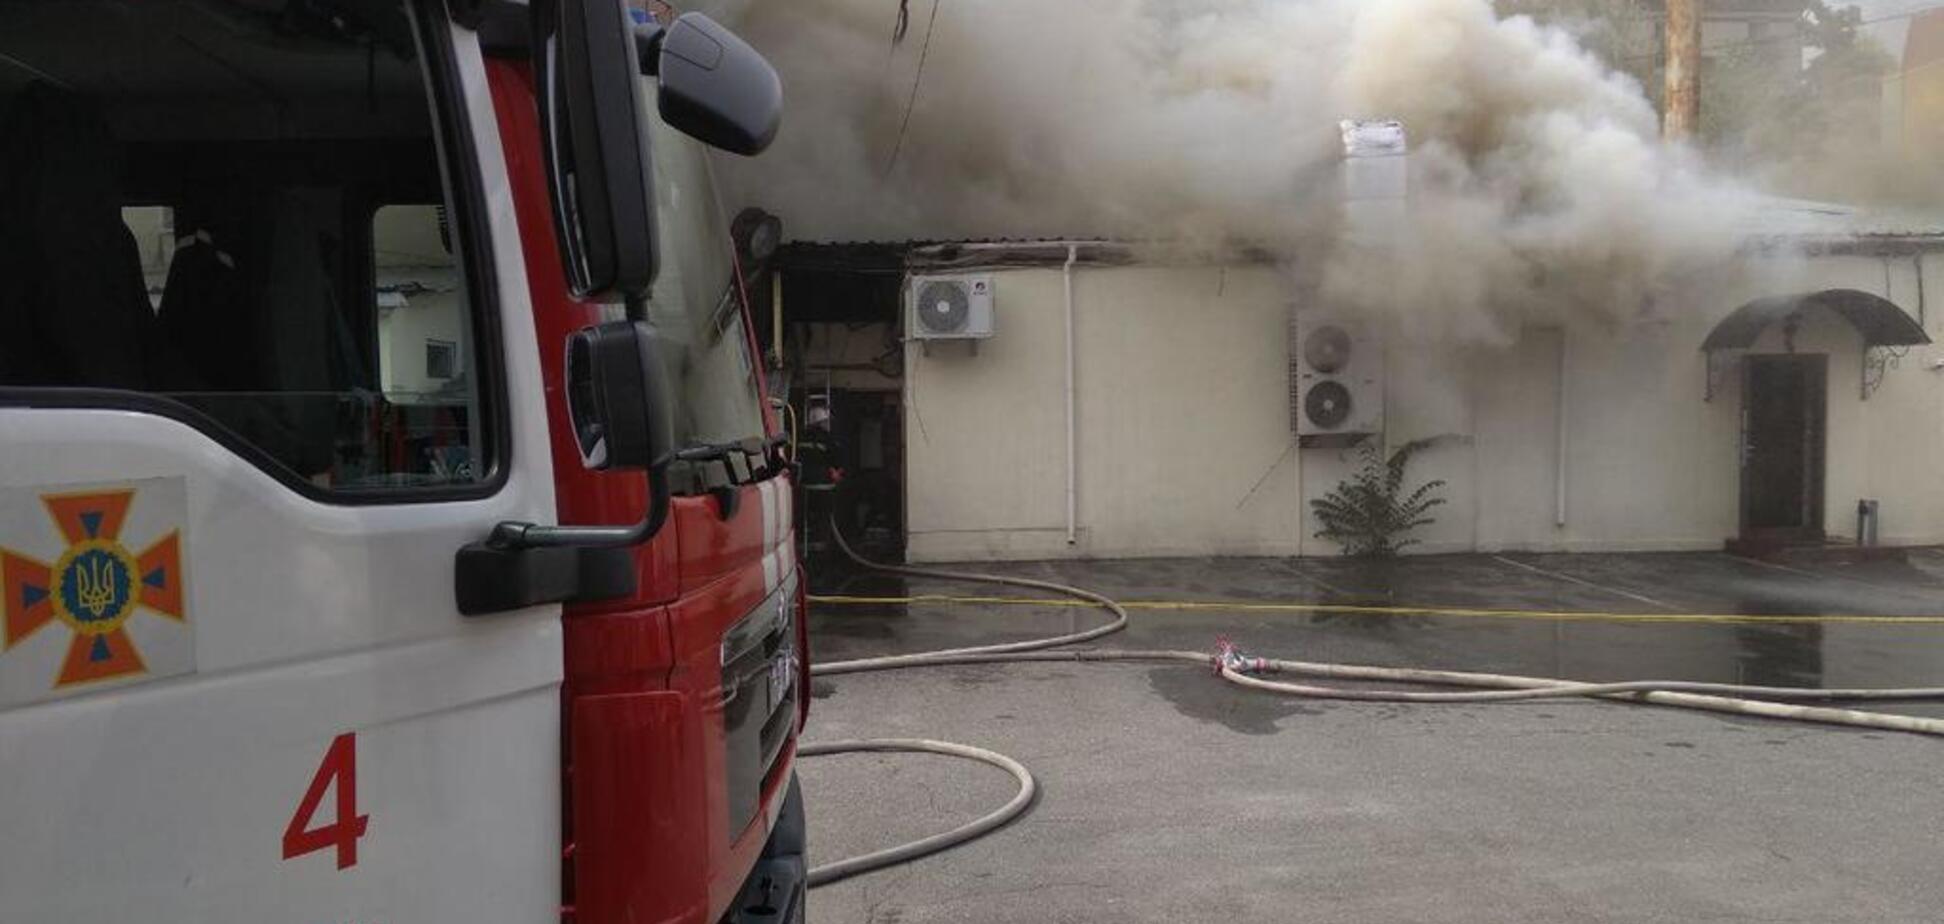 В Киеве разгорелся мощный пожар в ресторане: появились первые фото и видео